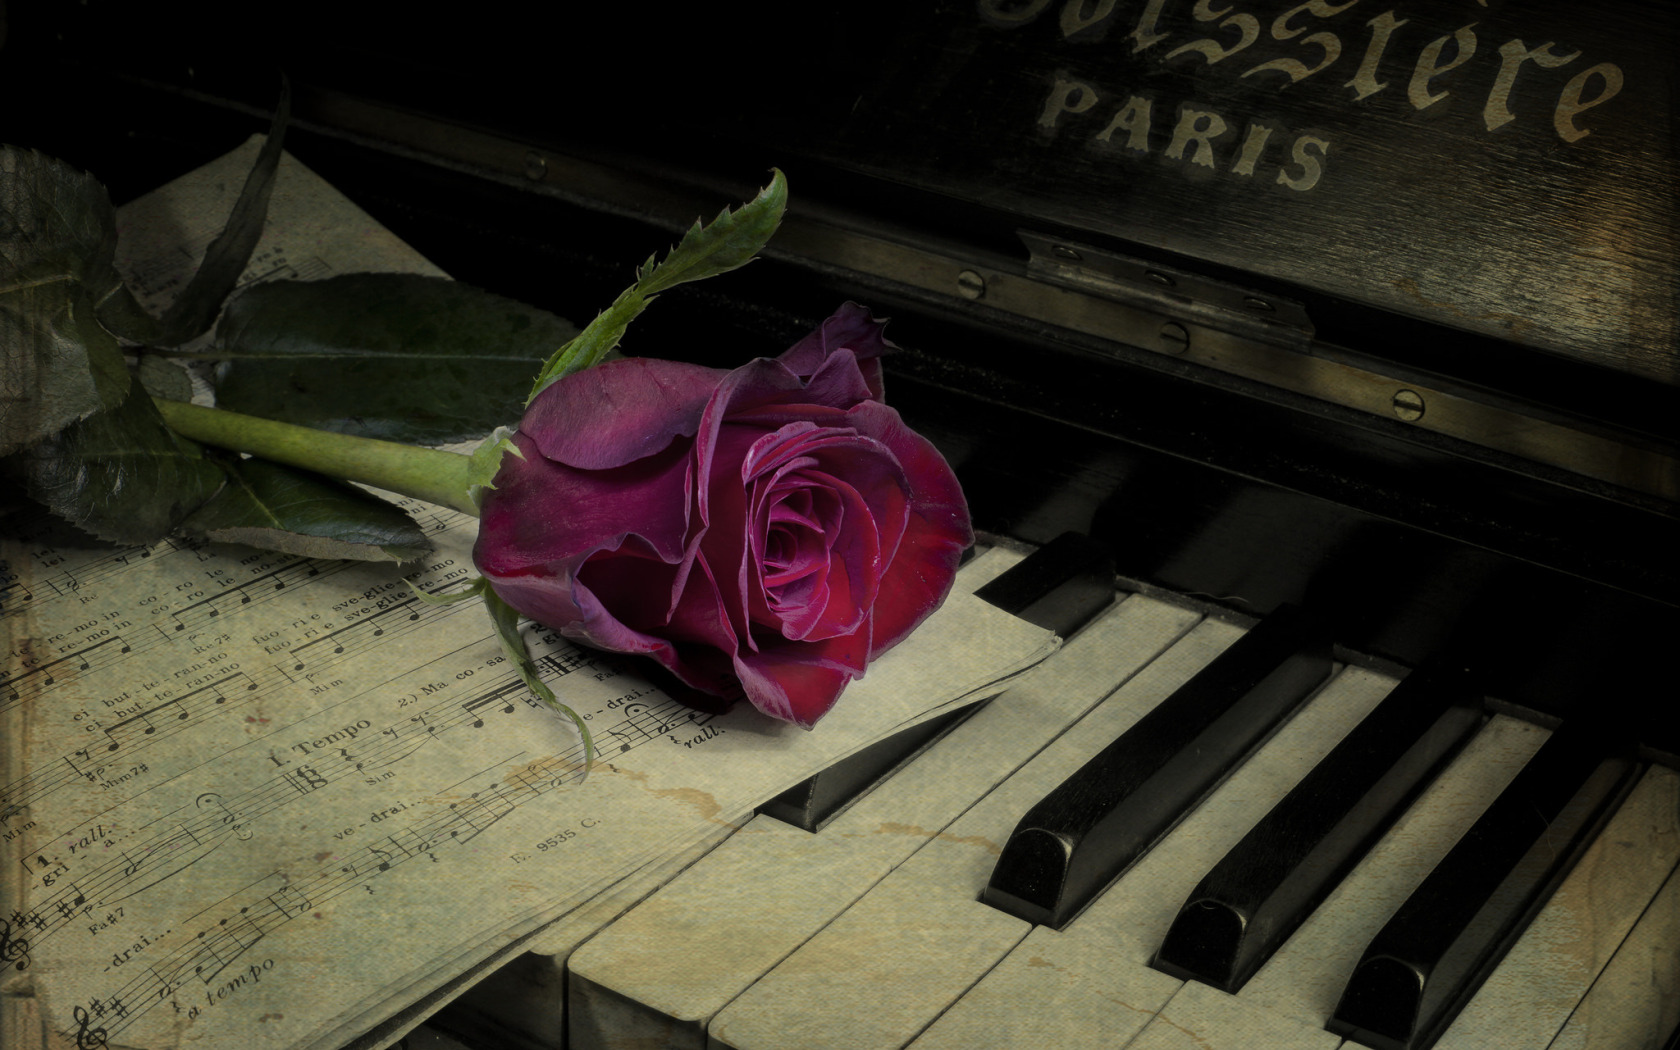 Цветы на пианино. Пианино с цветами. Пианино на рабочий стол. Цветы на рояле. Лирические цветы